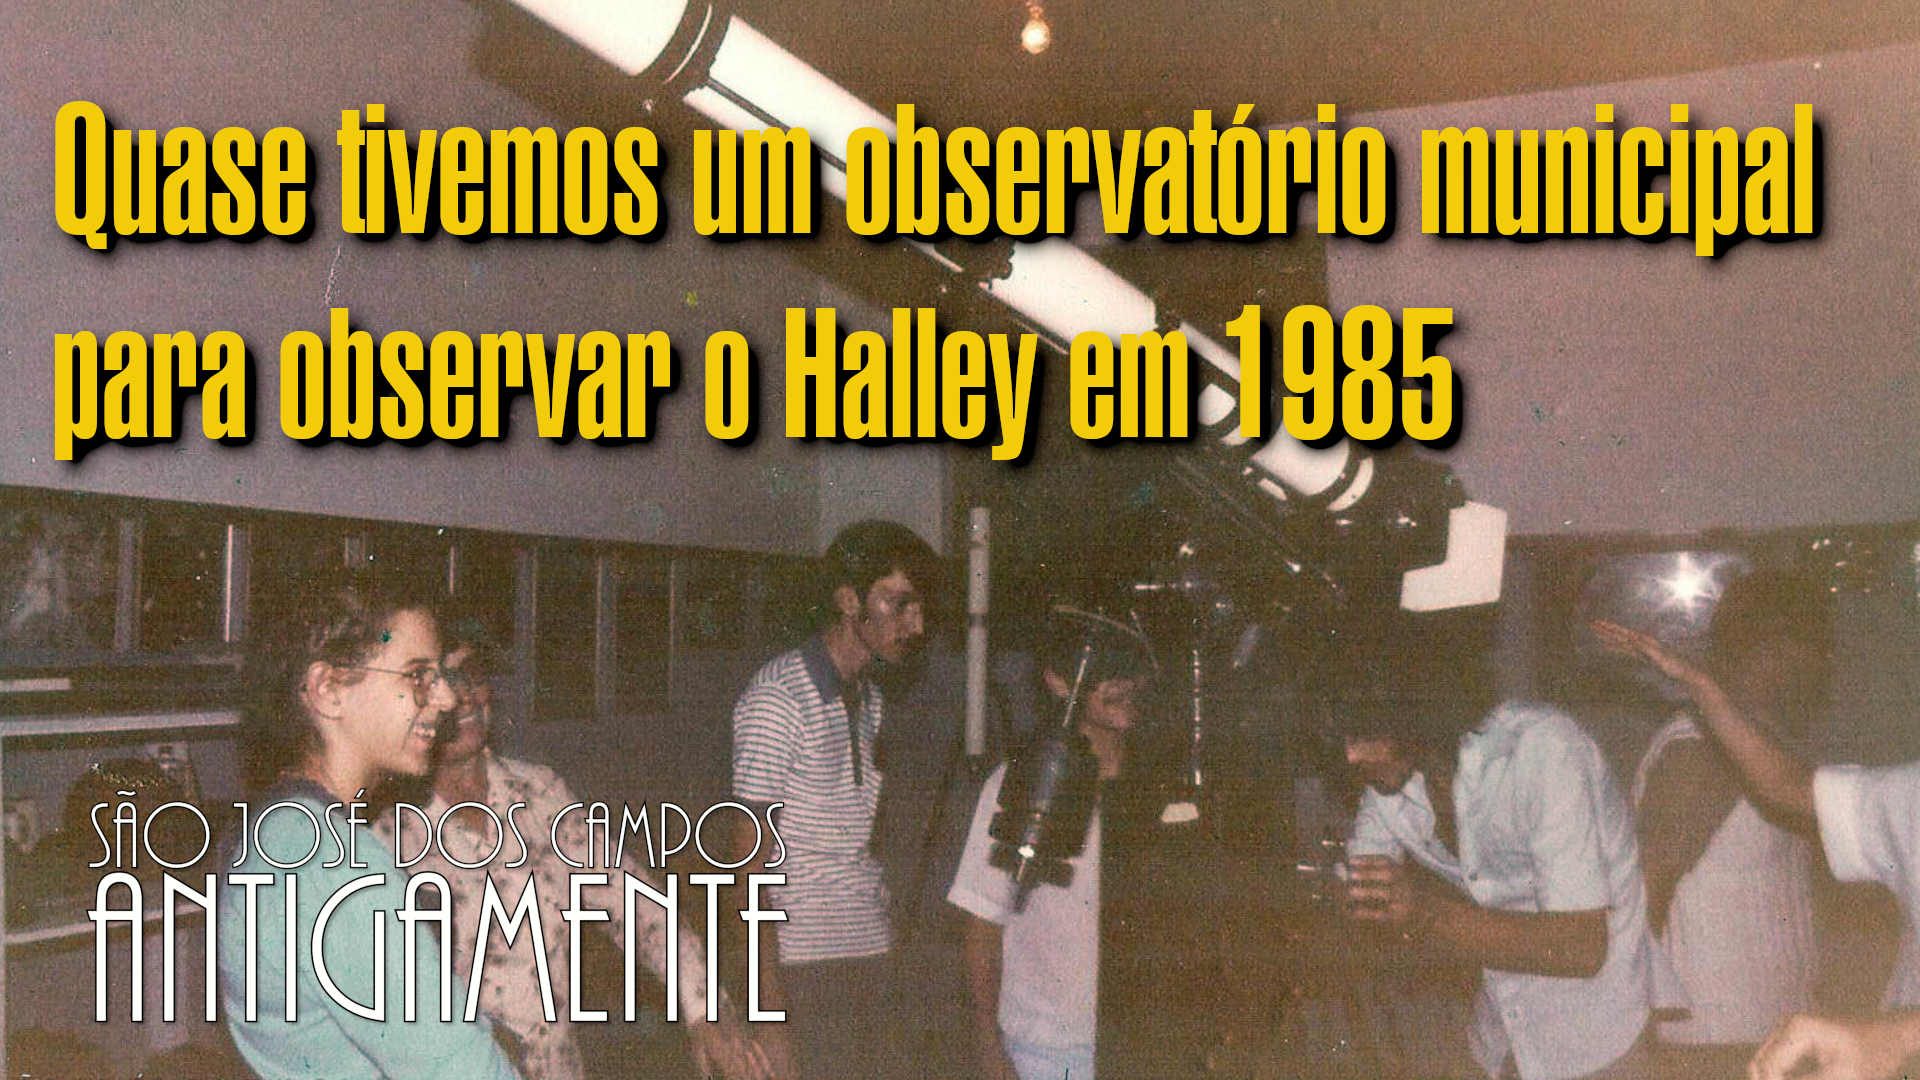 Quase tivemos um observatório municipal para observar o Halley em 1985